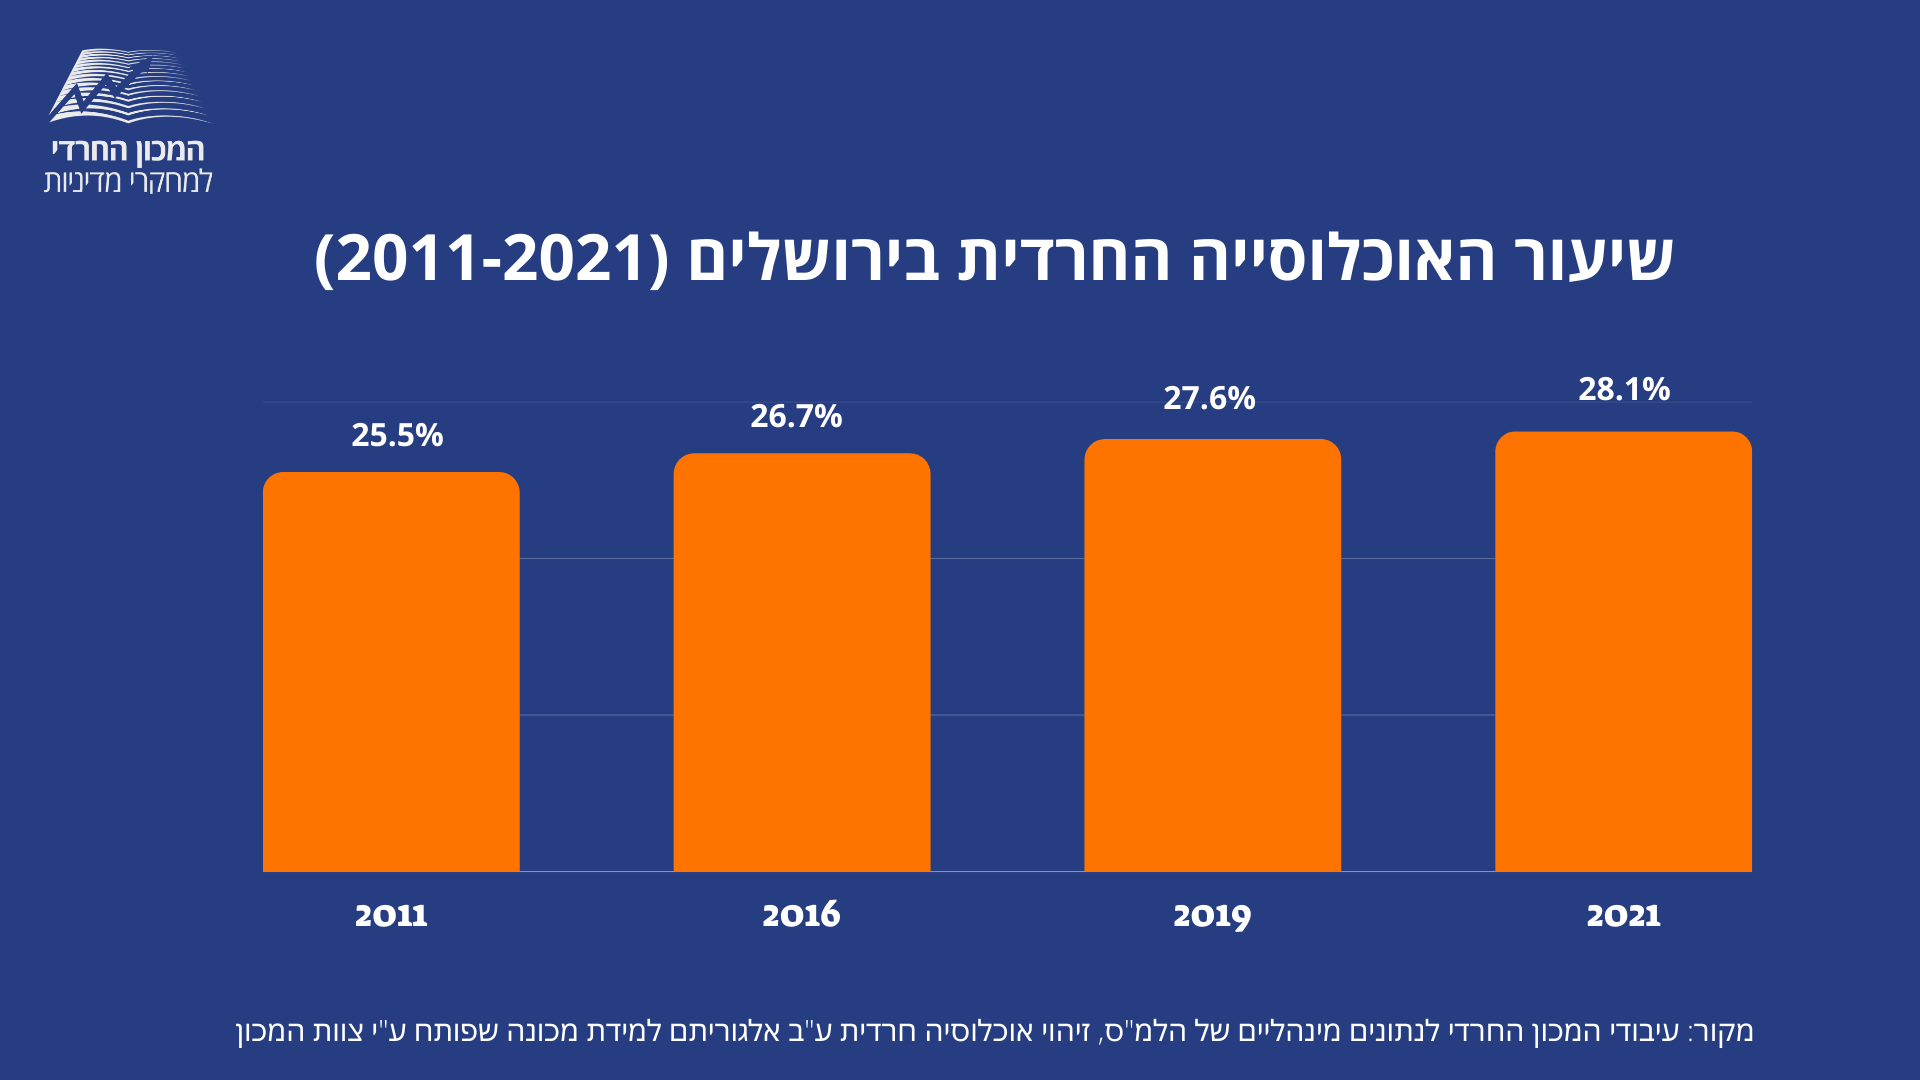 שיעור האוכלוסייה החרדית בירושלים